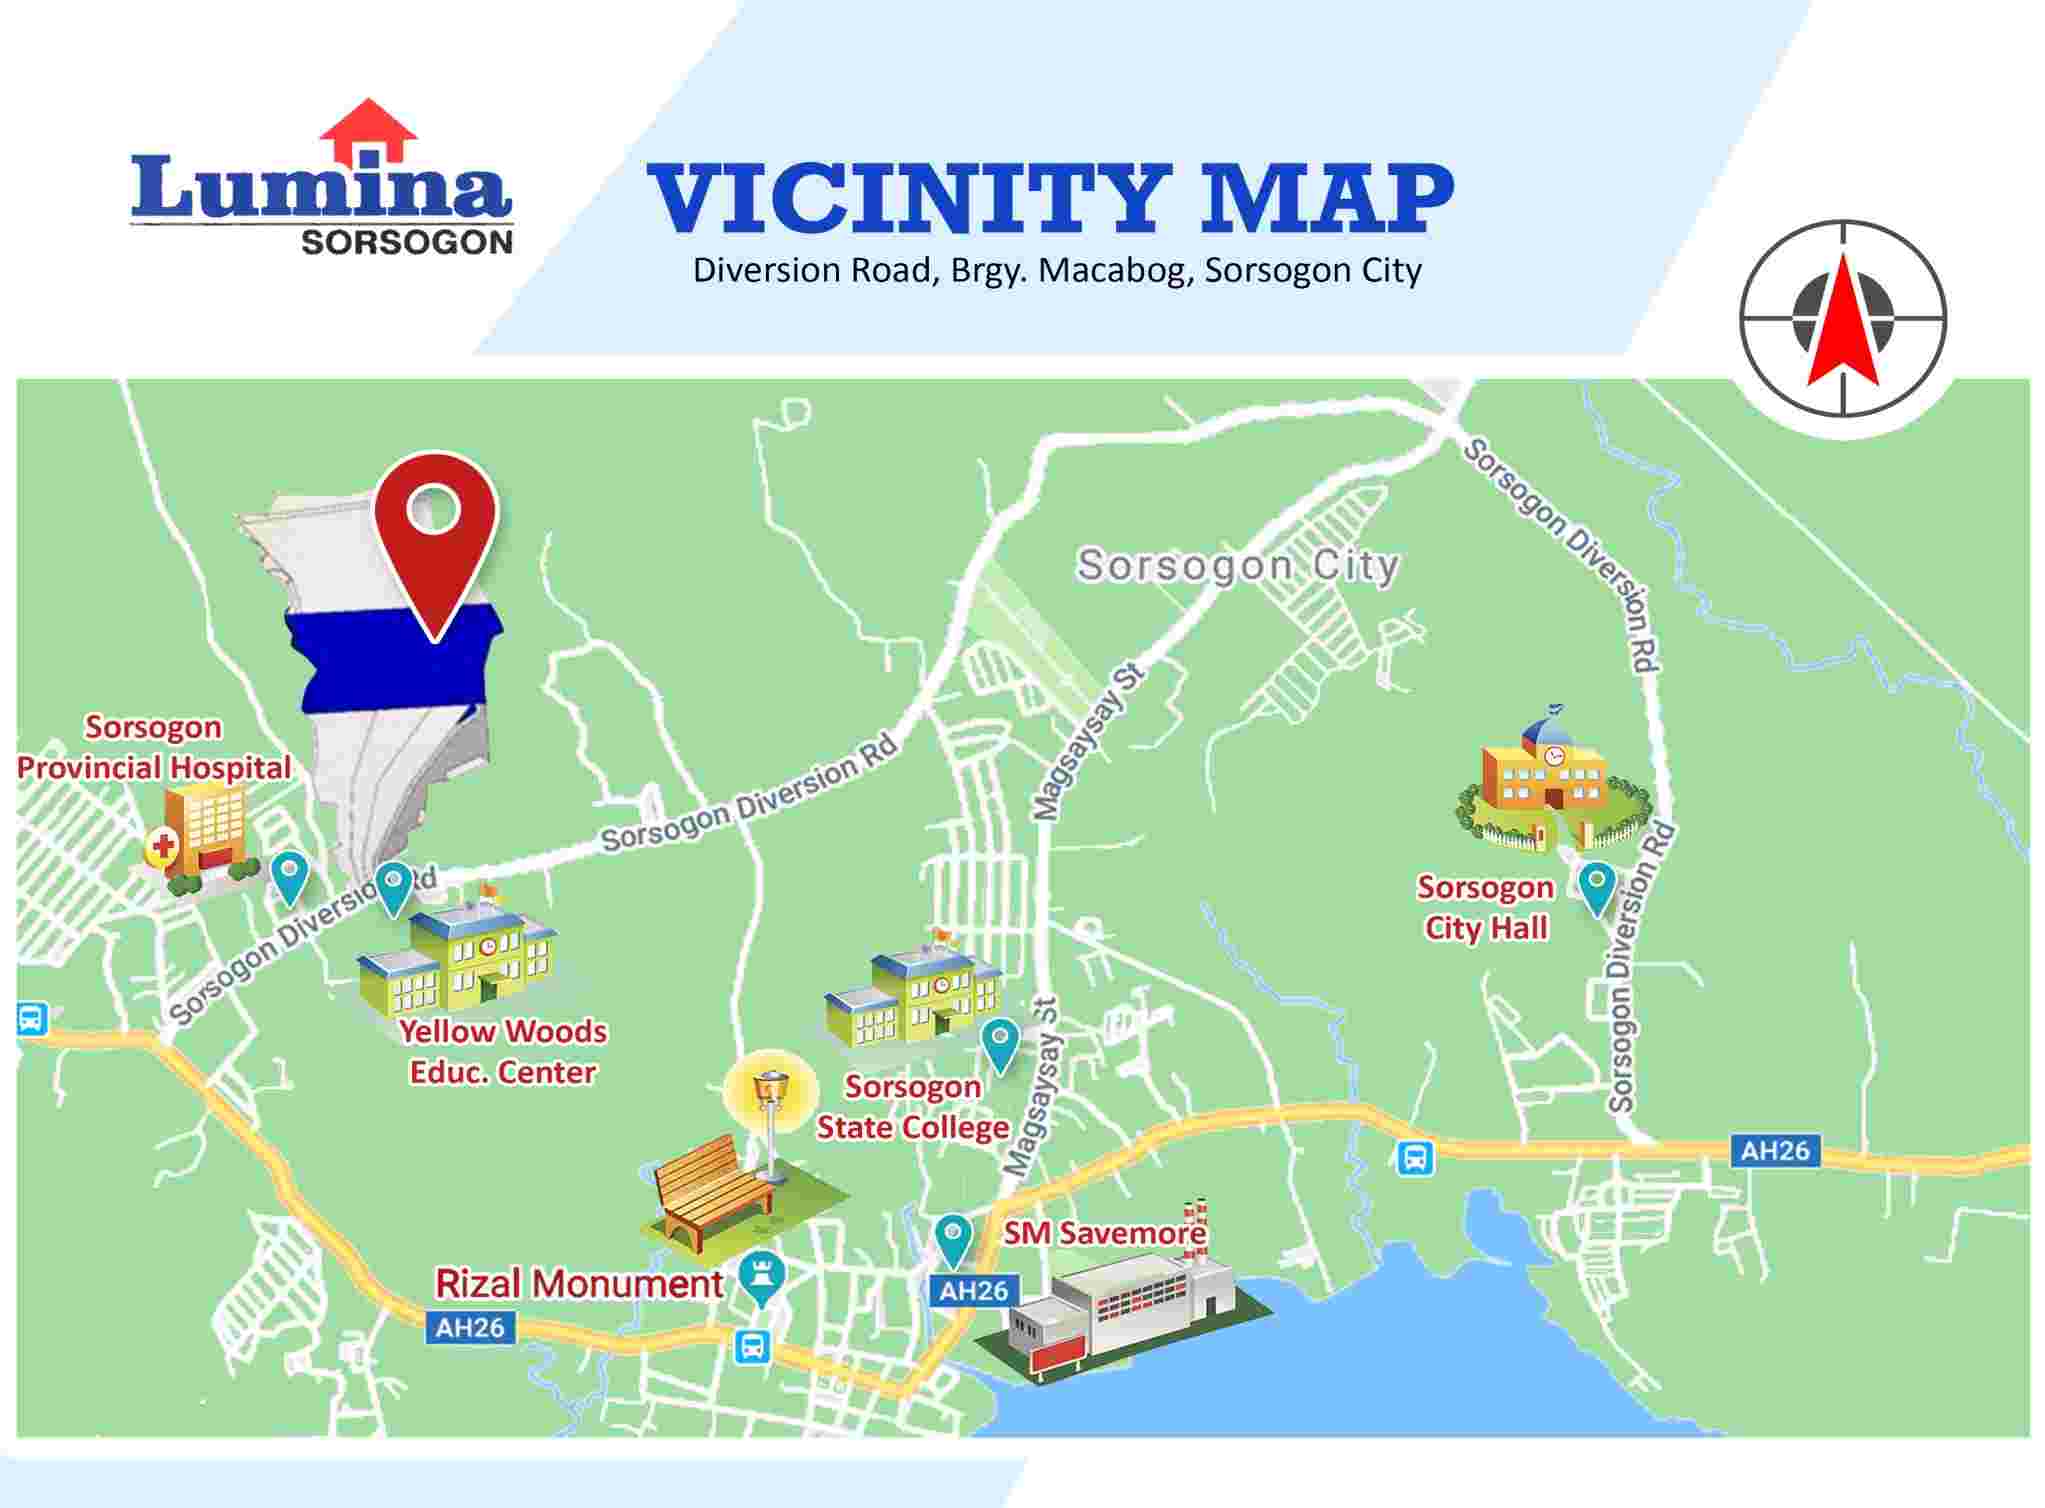 Vicinity-Map-1636420615.jpeg